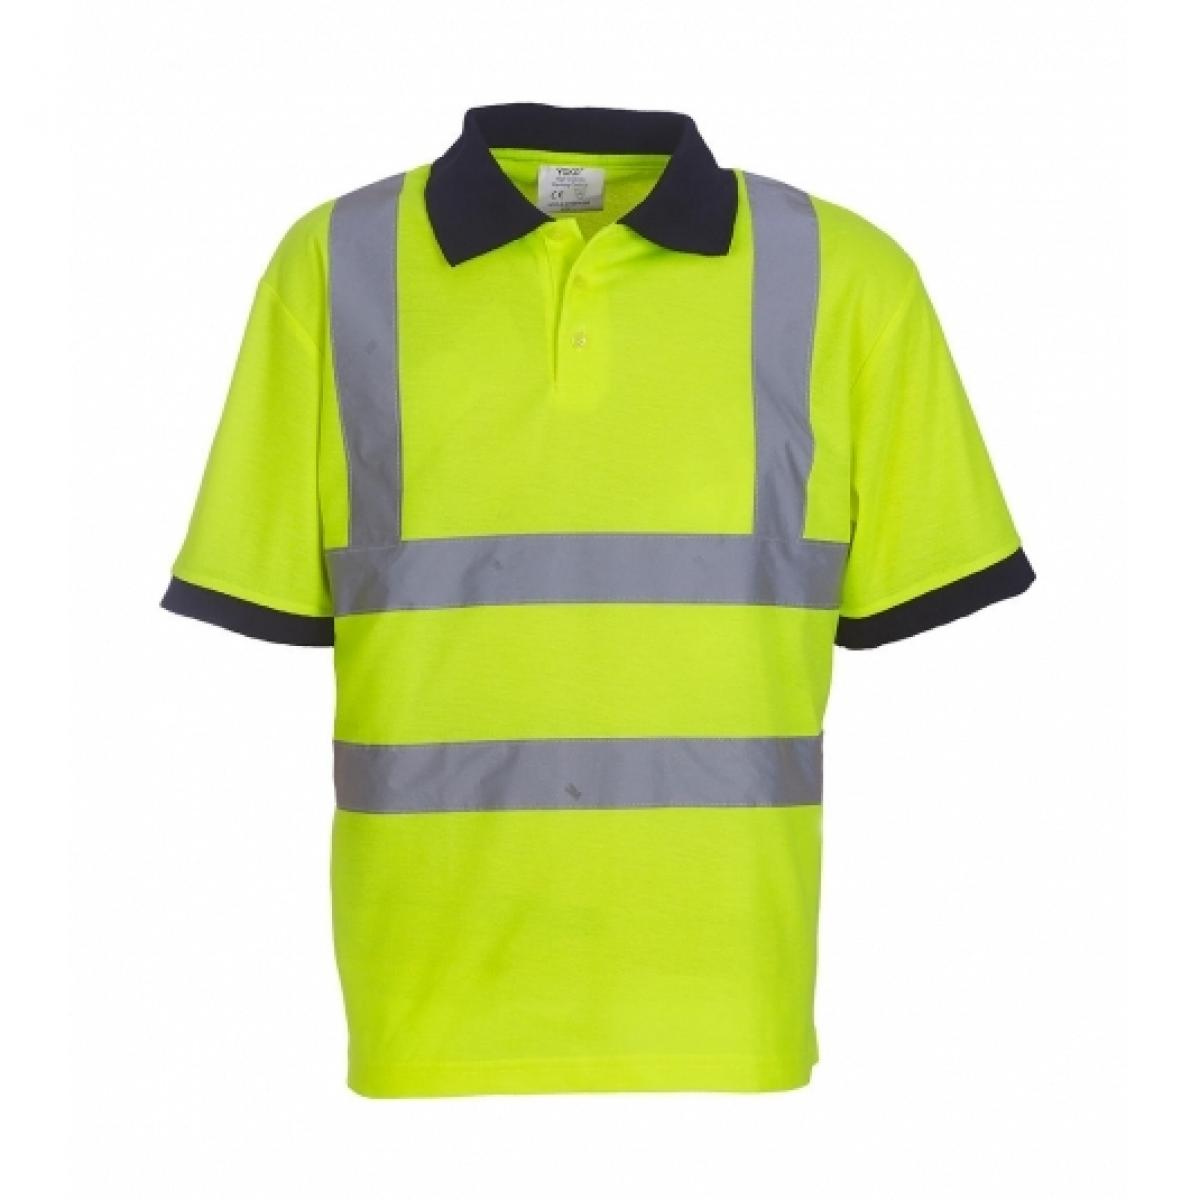 Hersteller: YOKO Herstellernummer: HVJ210 Artikelbezeichnung: Herren Sicherheits Polo Shirt EN ISO 20471 bis 6XL Farbe: Hi-Vis Yellow